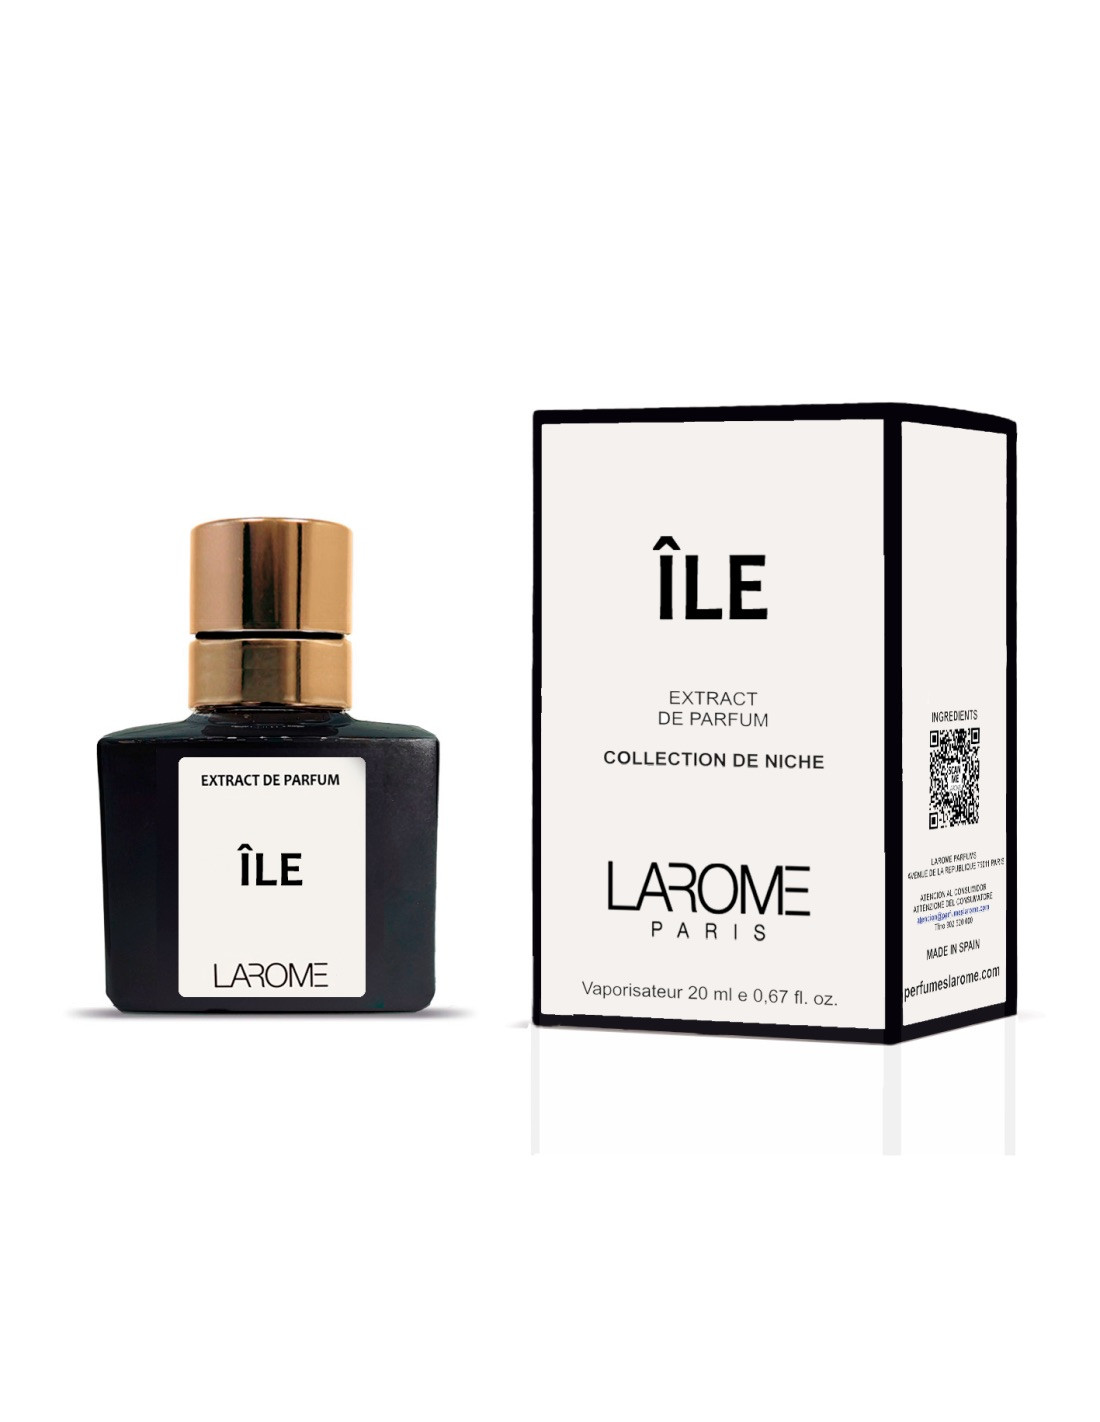 LAROME Paris - ILE- Extract de Parfum Varianta: 100ml